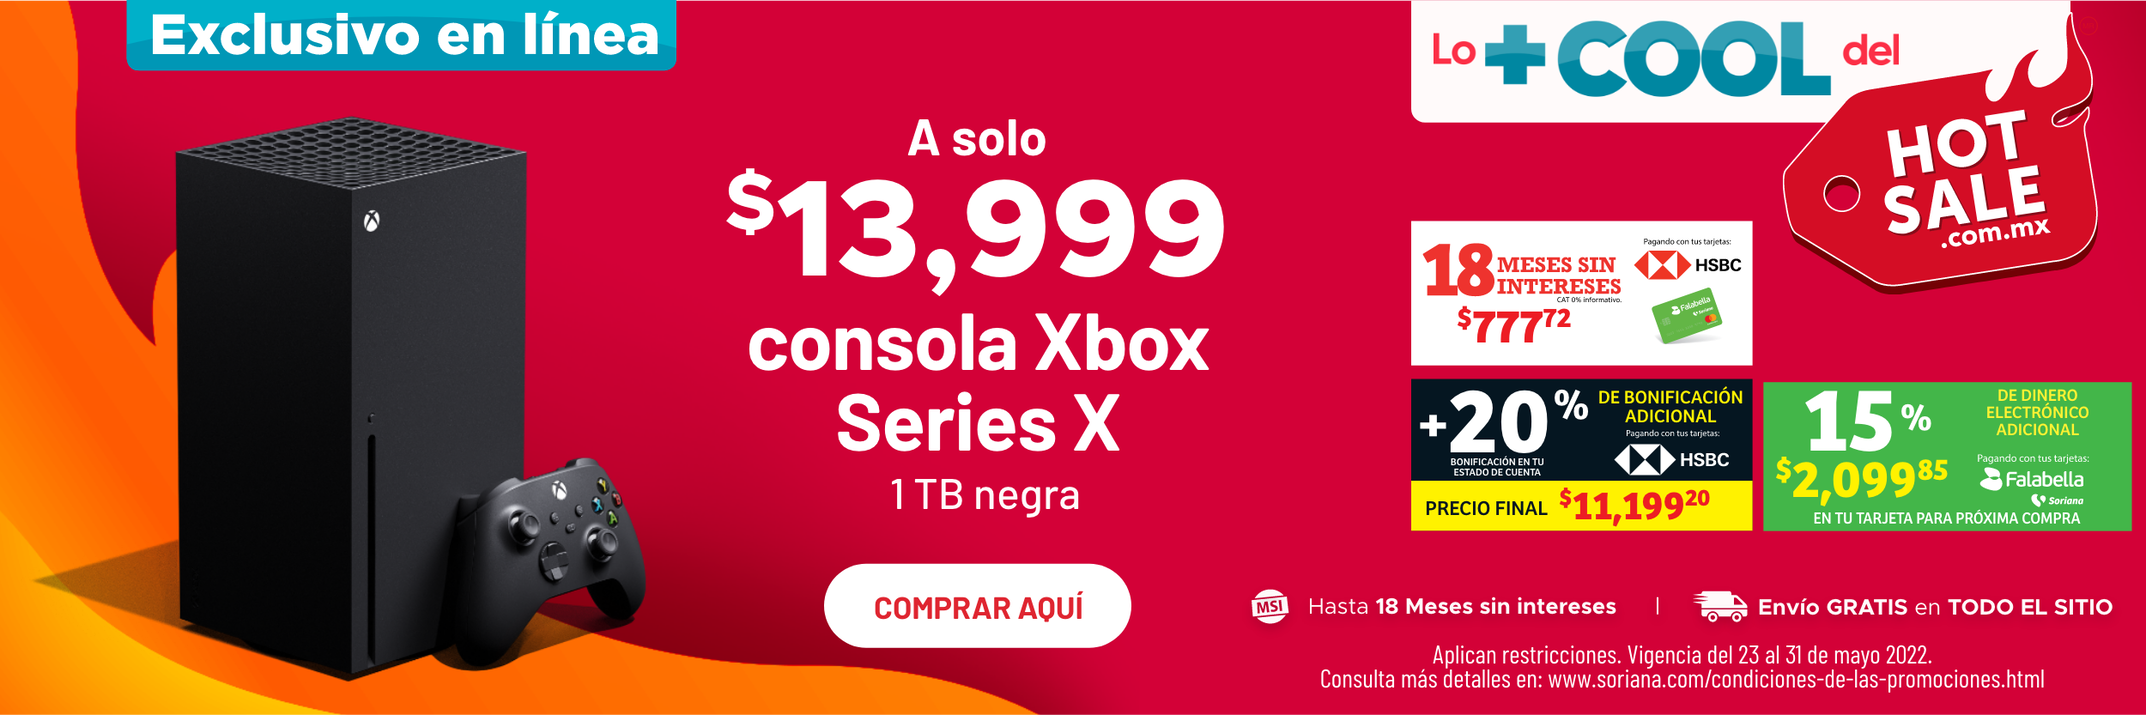 ¡Consola Xbox Serie X 1TB a solo $13,999!